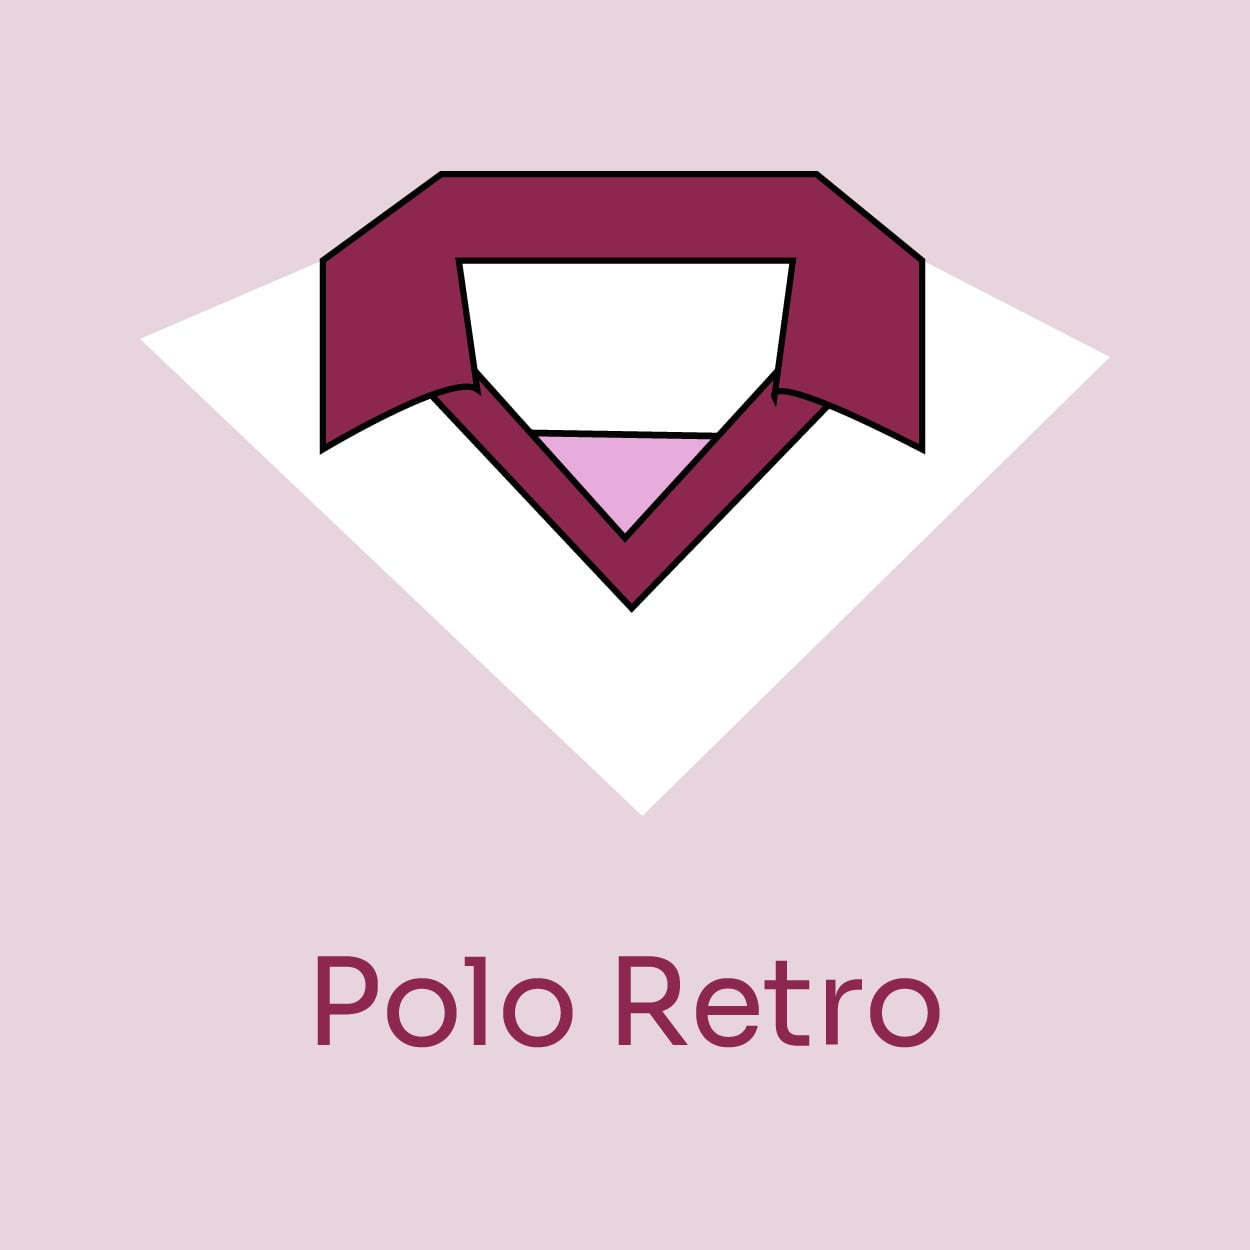 Polo Retro